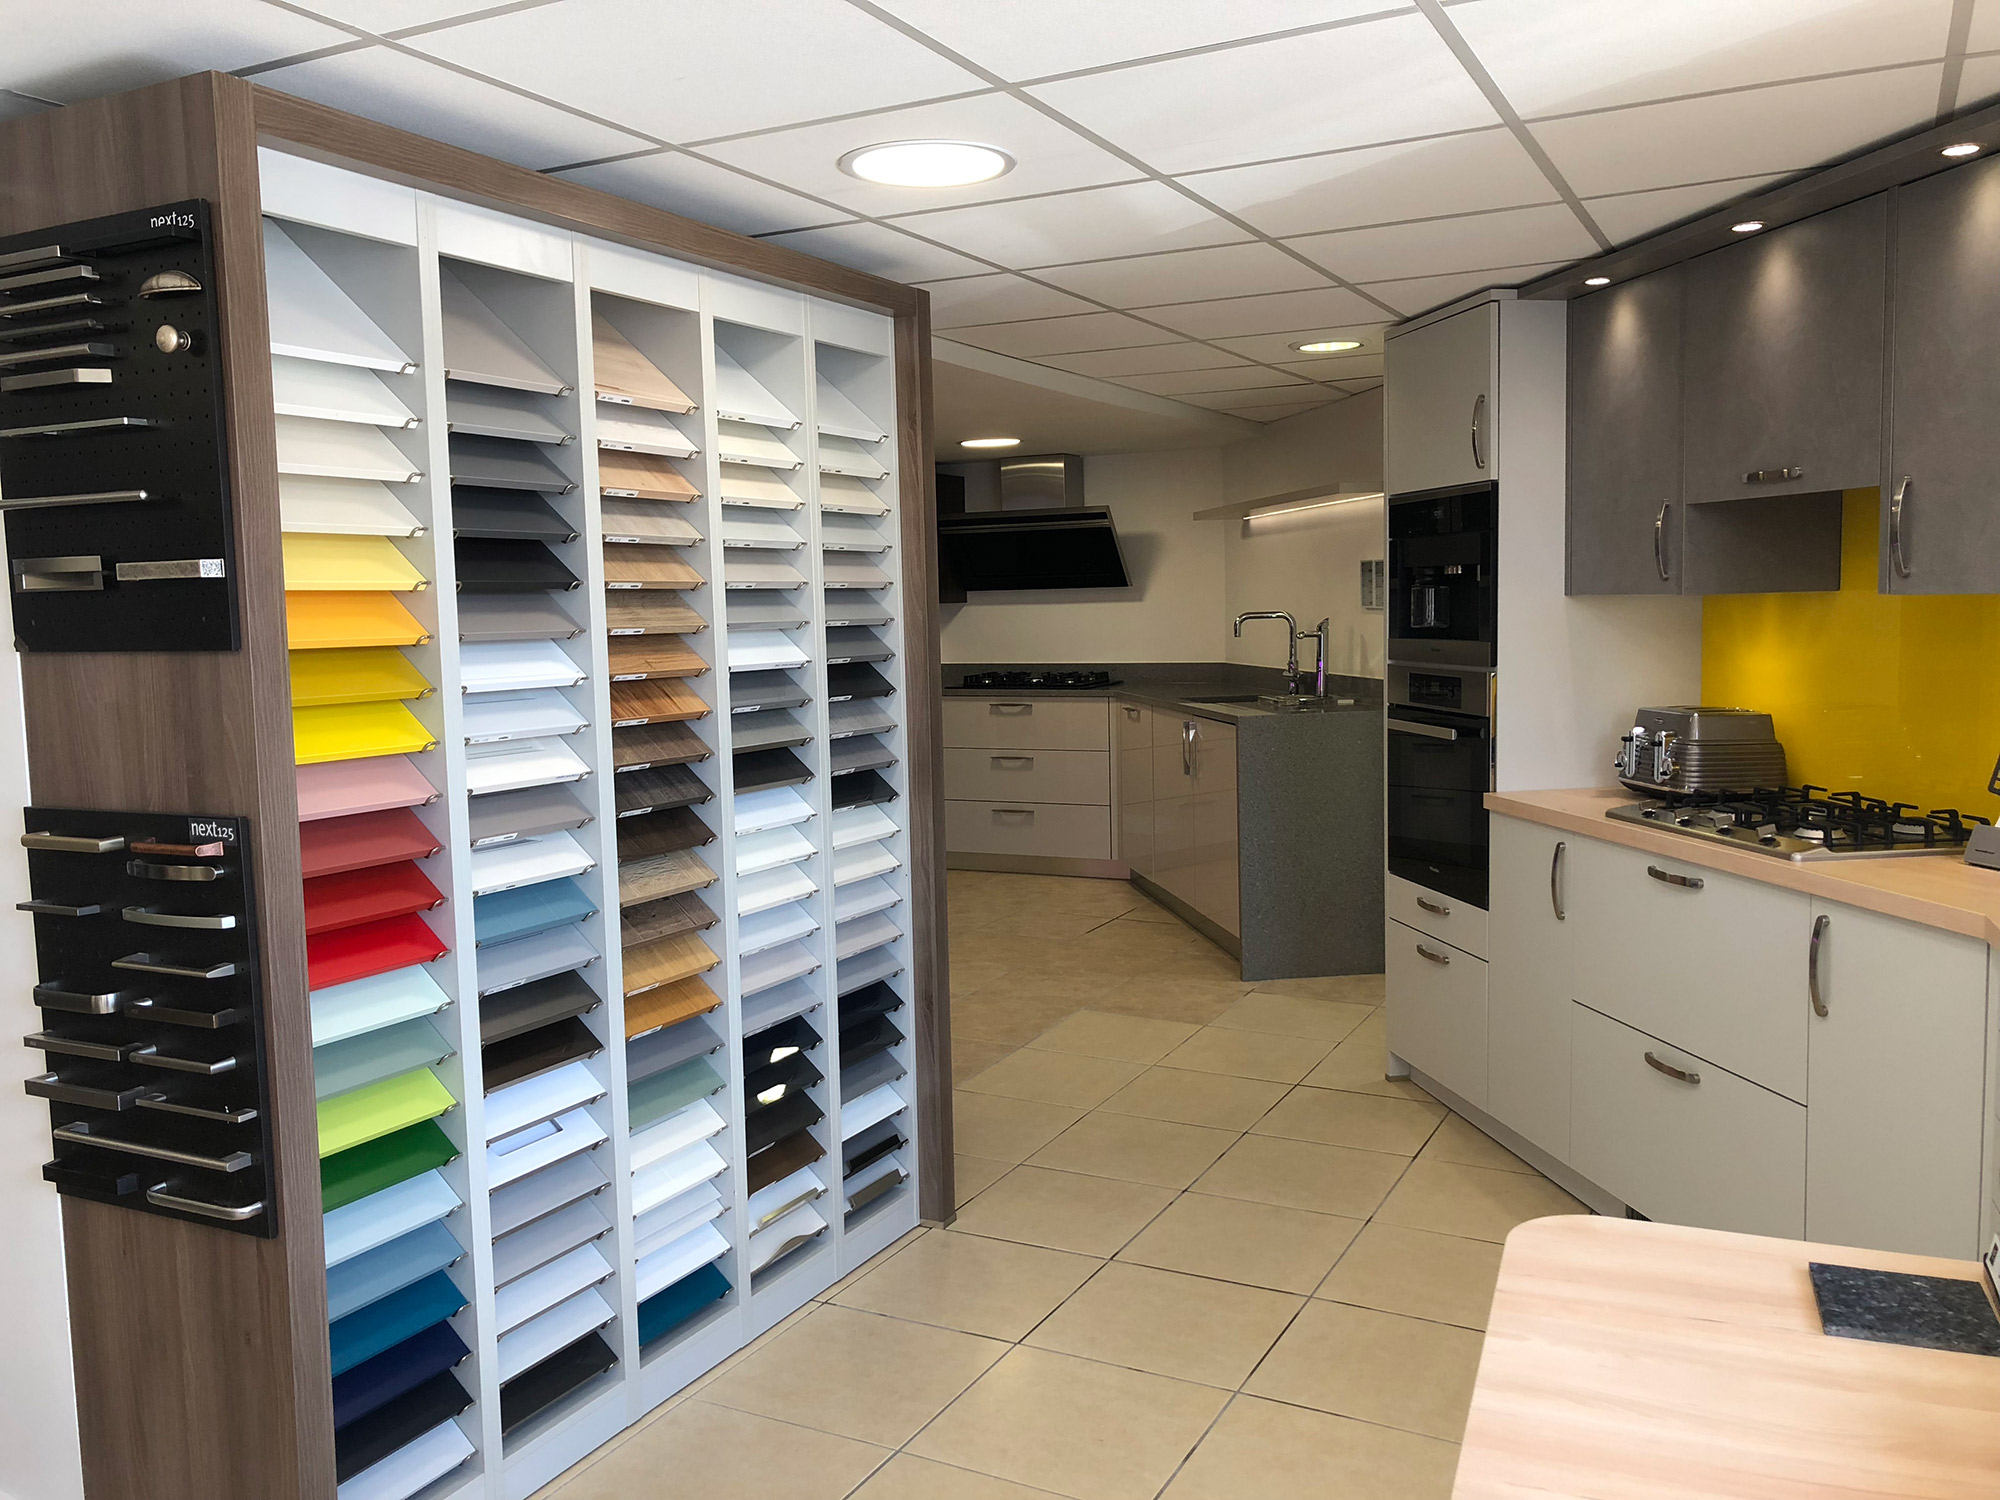 kitchen design showrooms colourado springs